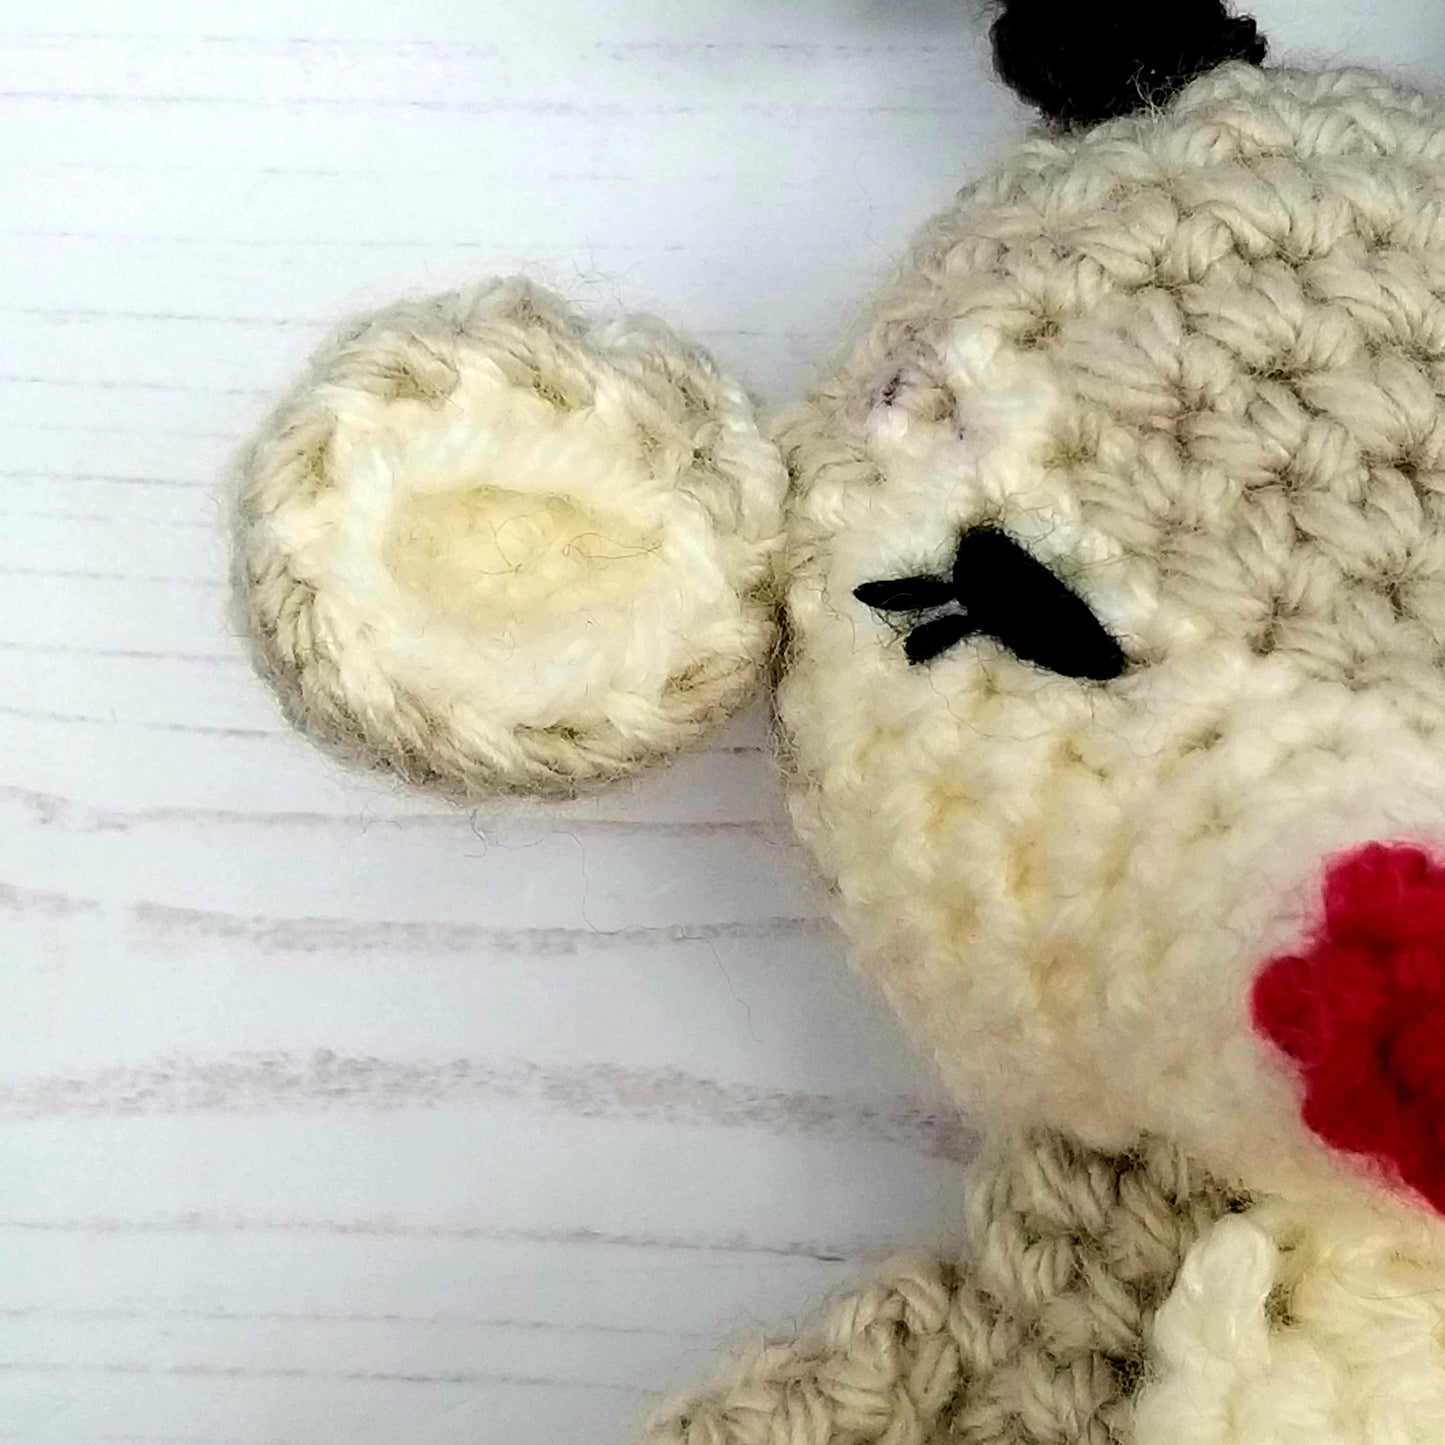 Baby Crochet Reindeer - Ear Detail